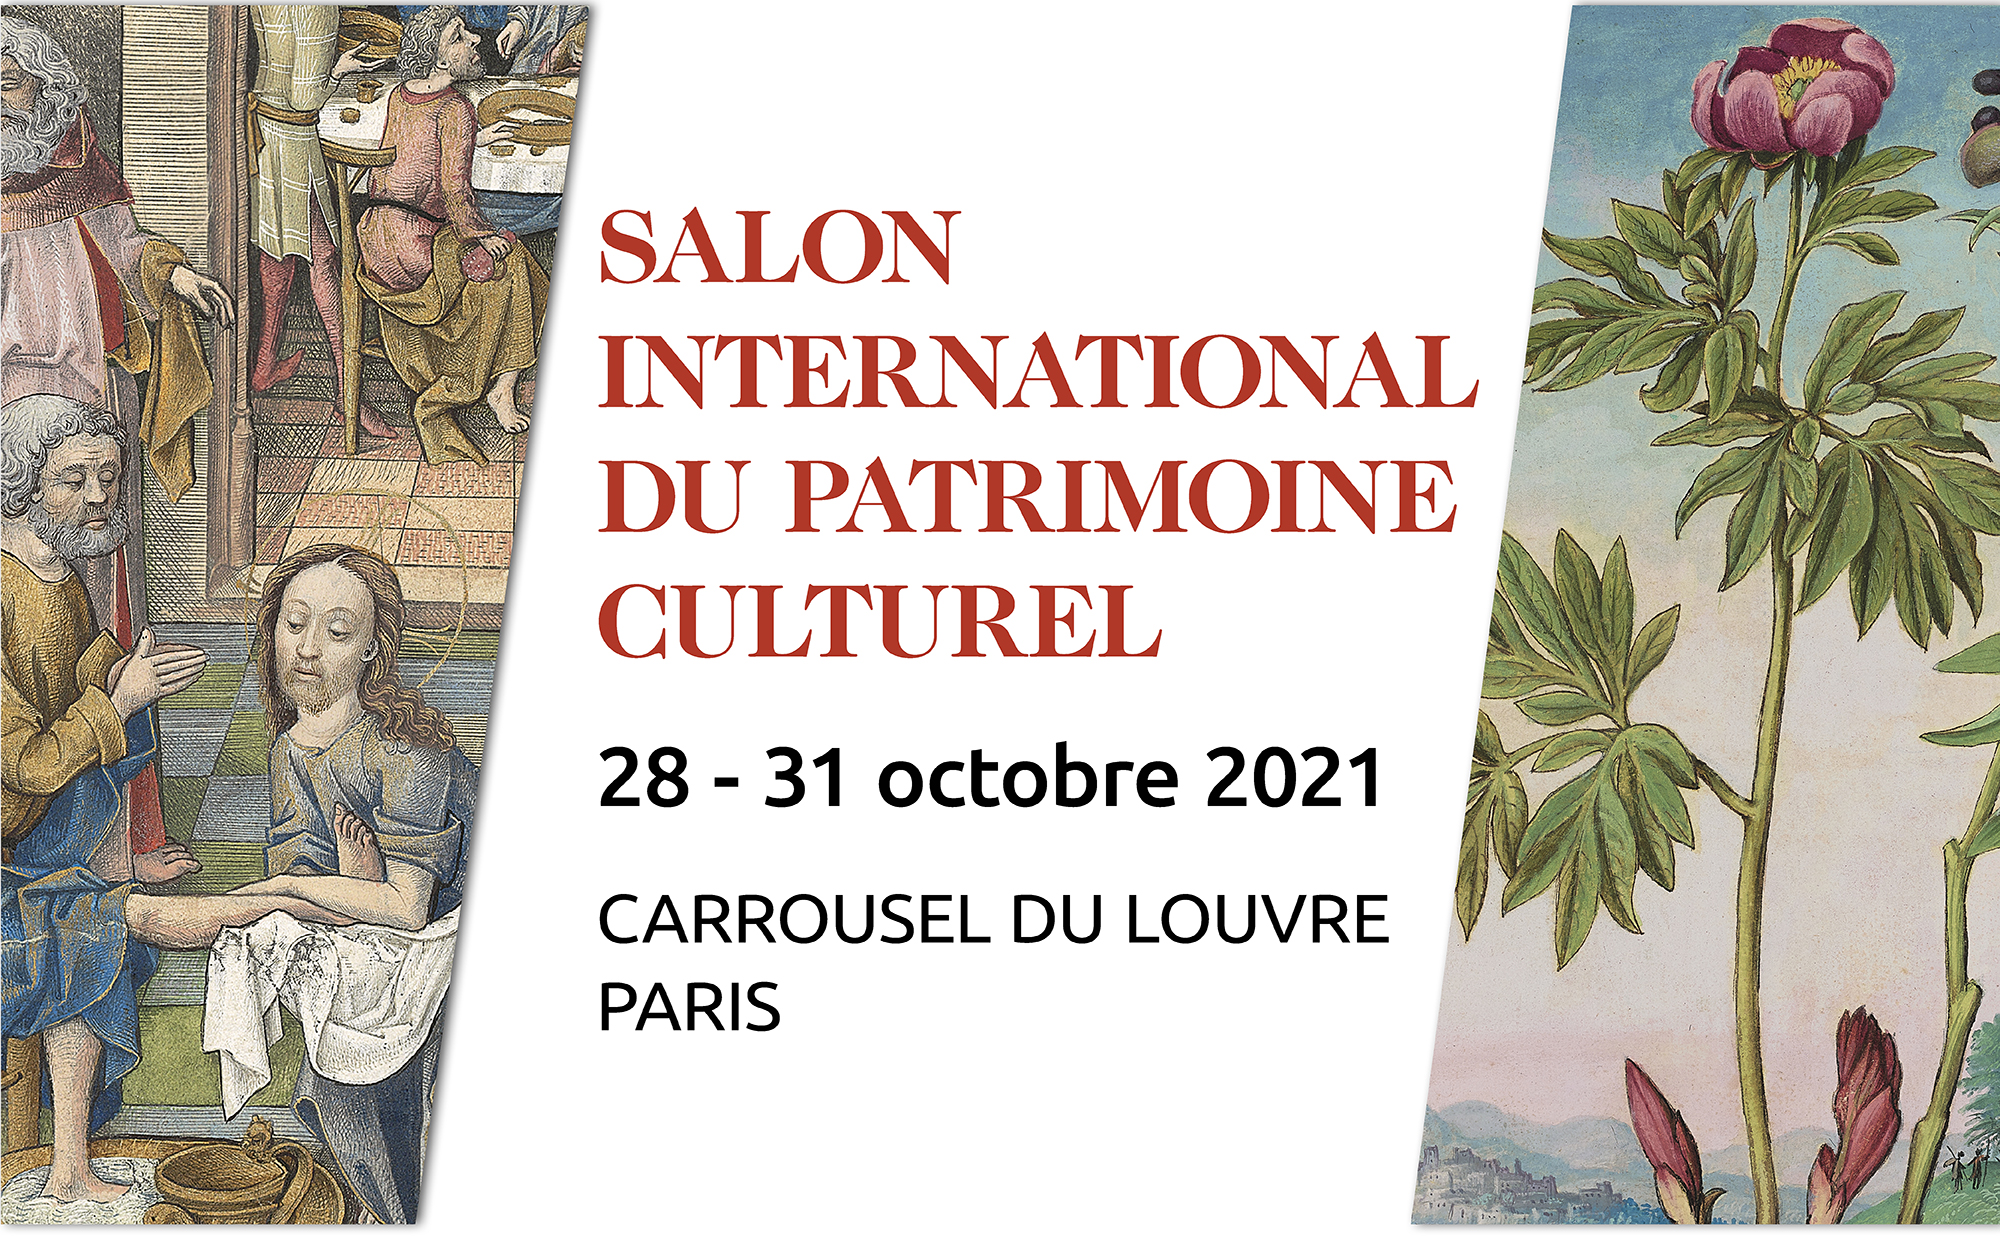 SALON INTERNATIONAL DU PATRIMOINE CULTUREL, DU 28 AU 21 OCTOBRE 2021, CARROUSEL DU LOUVRE PARIS